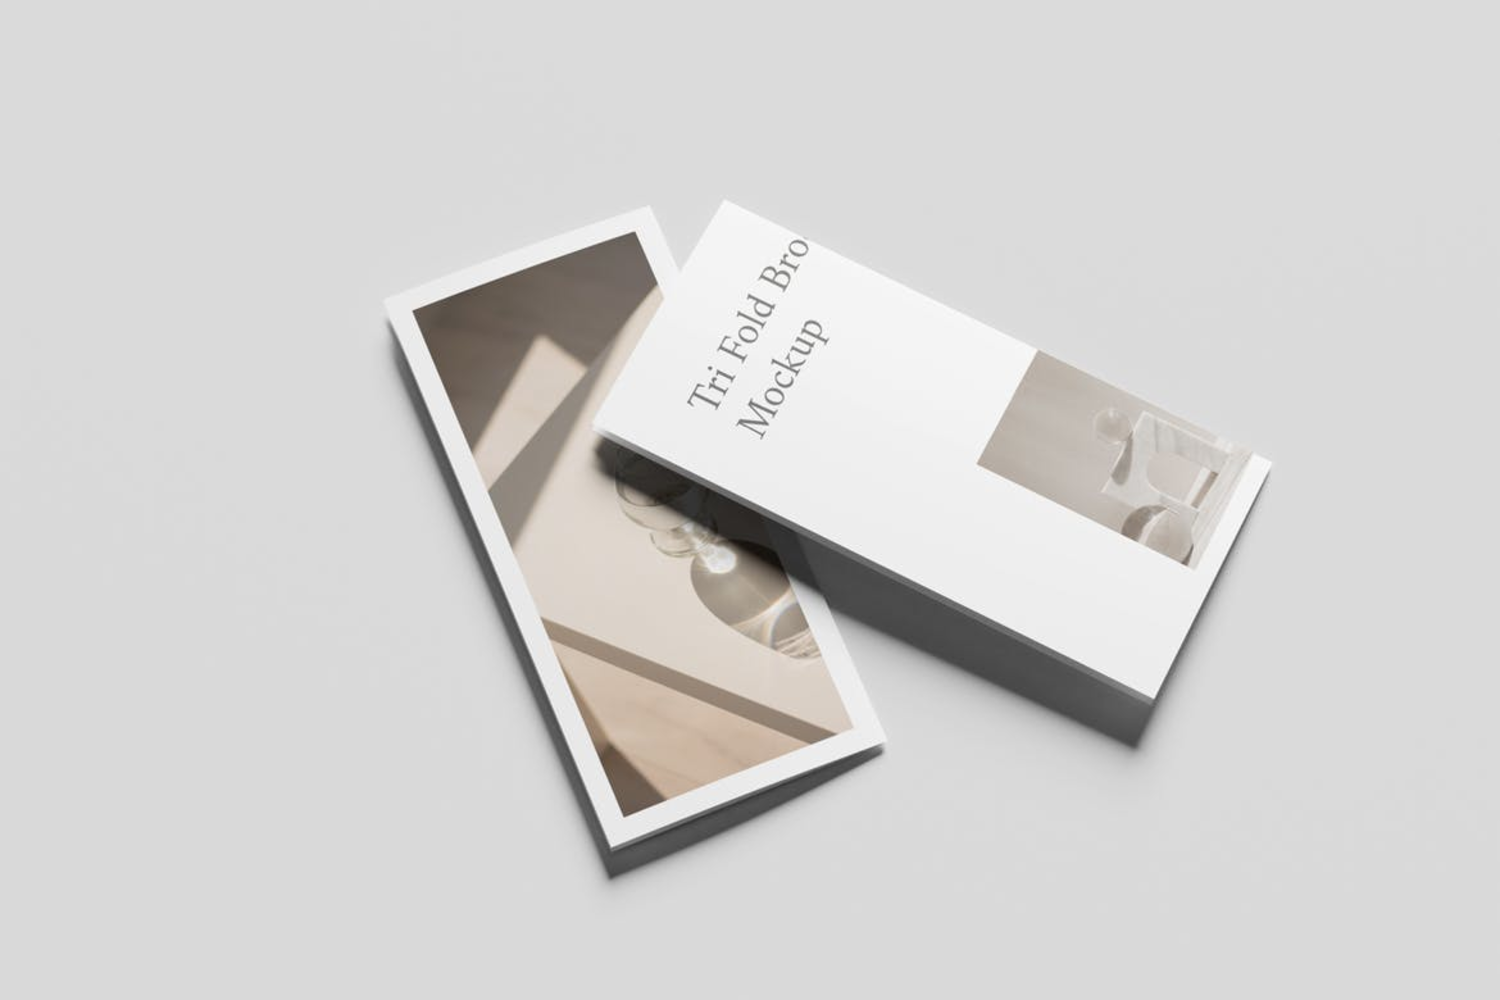 3911 5款品牌宣传三折页小册子传单设计贴图ps折页样机素材国外设计模板 Tri-Fold Brochure Mockup@GOOODME.COM